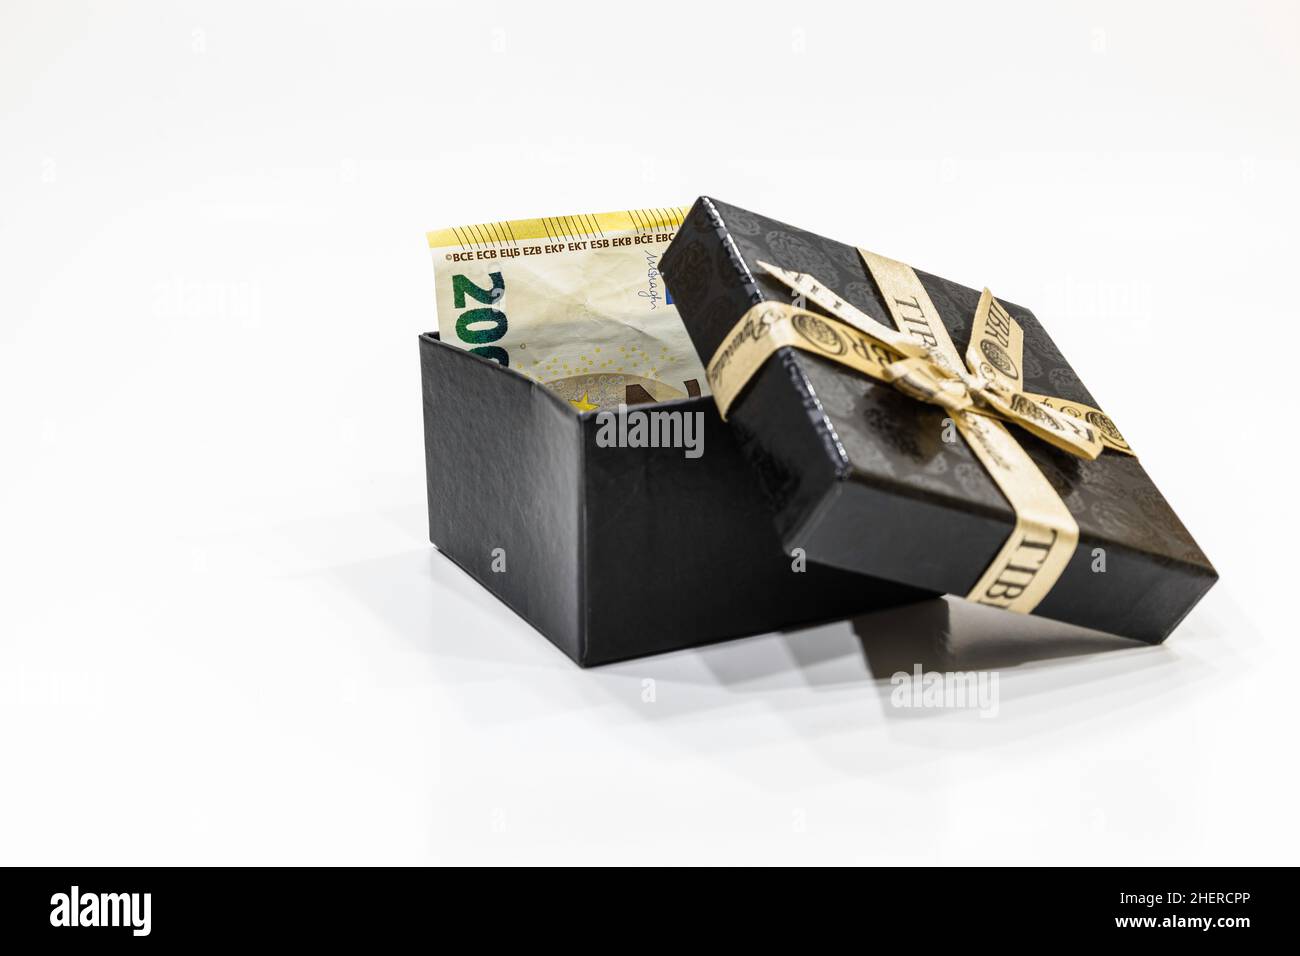 Boîte cadeau avec euro.Billet de banque d'une valeur nominale de 200 euros  Photo Stock - Alamy